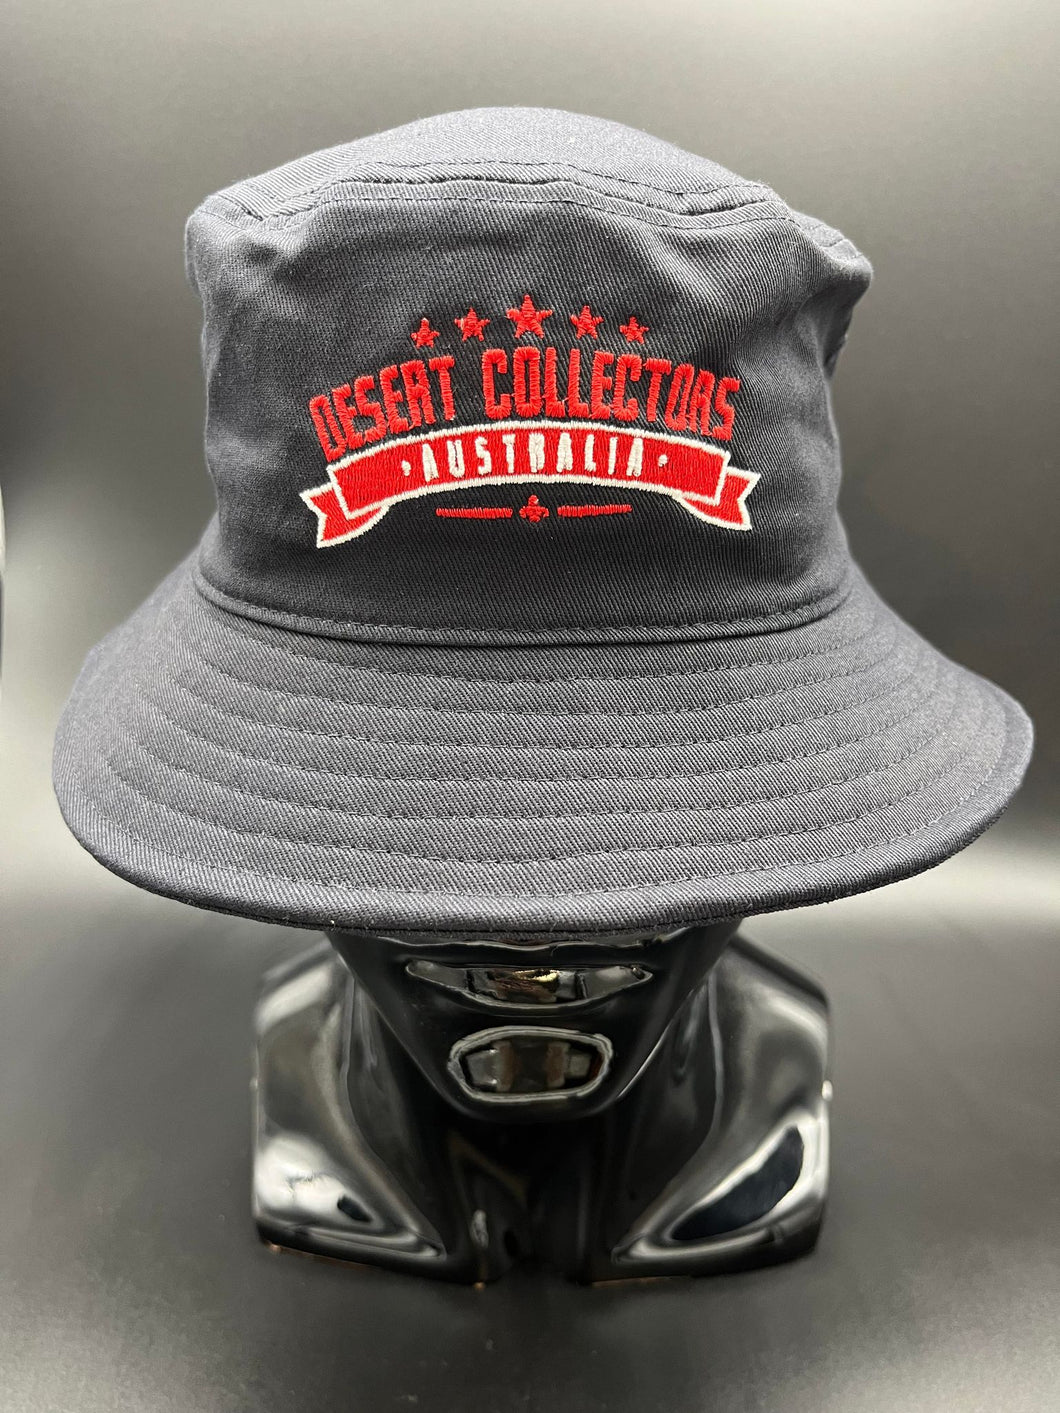 Desert Collectors Bucket Hat - Navy